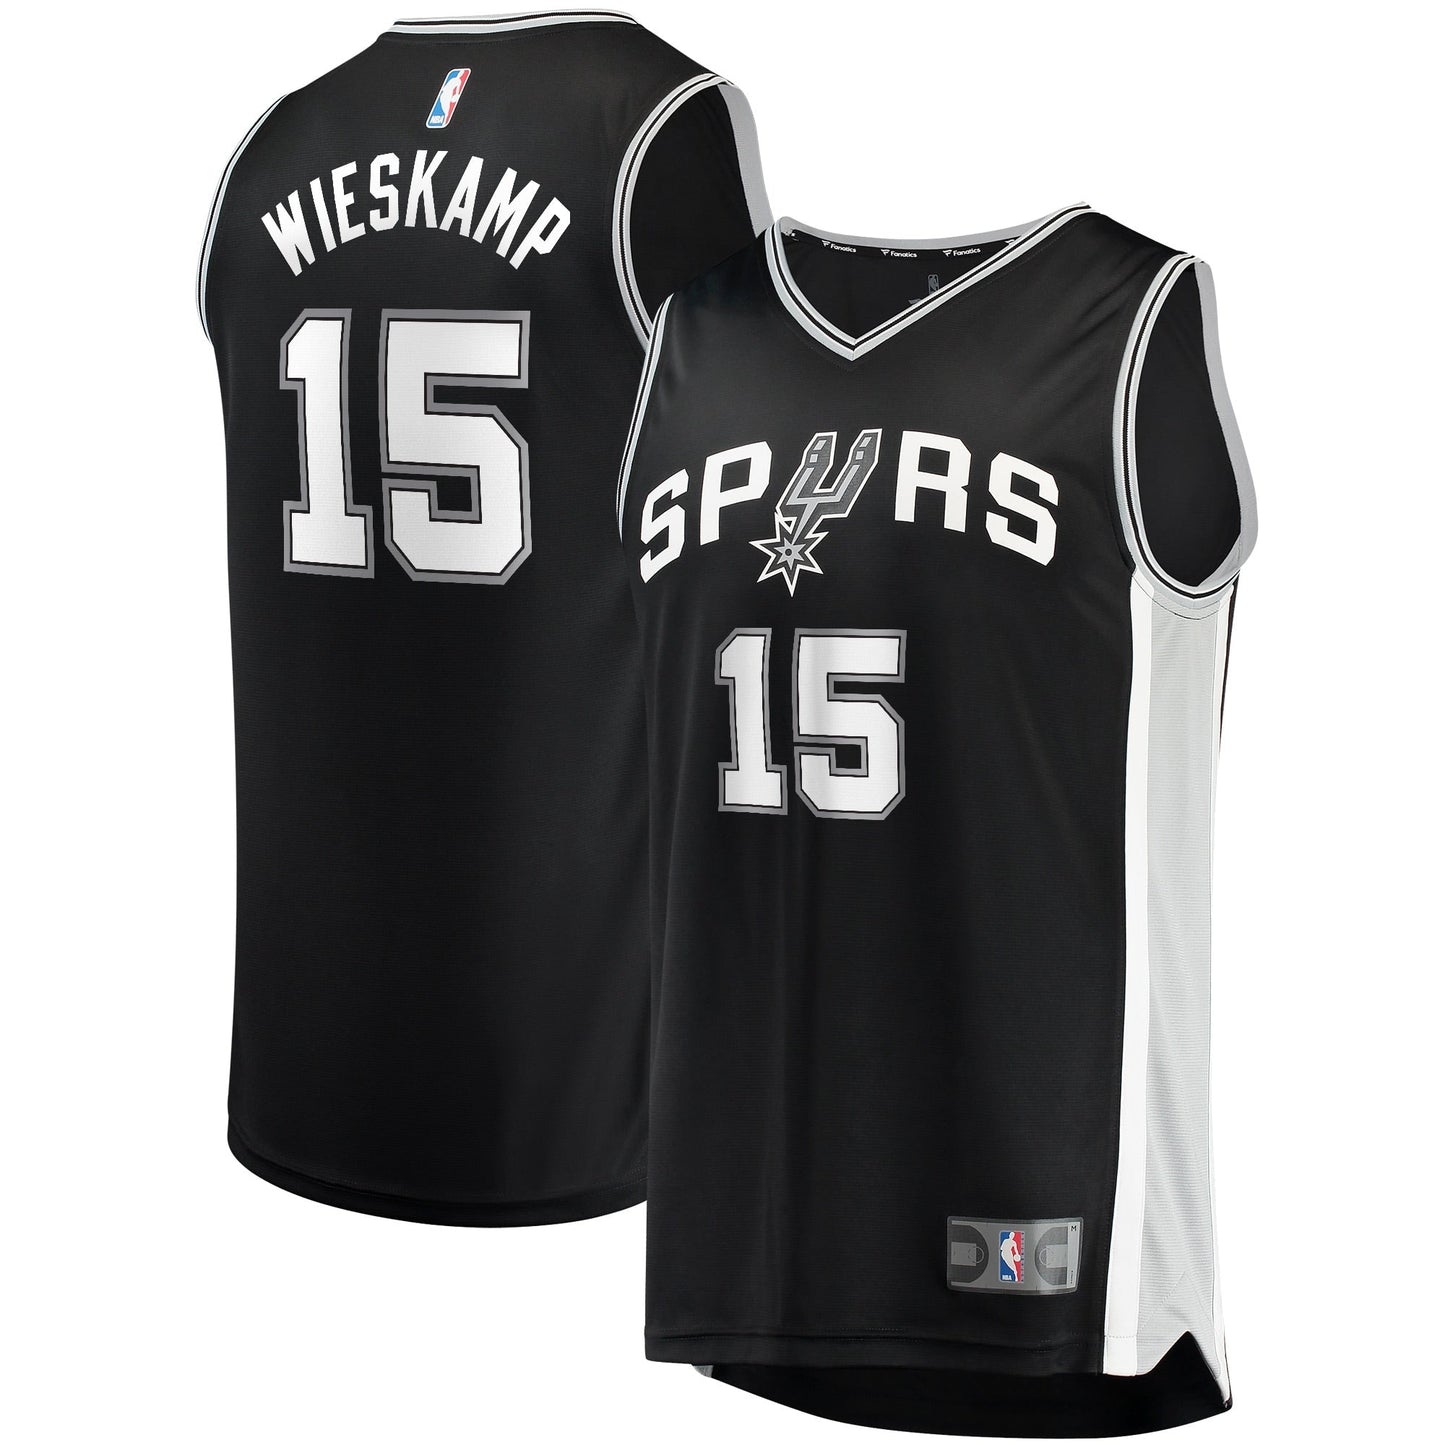 Men's Fanatics Branded Joe Wieskamp Black San Antonio Spurs 2021/22 Fast Break Replica Jersey - Icon Edition